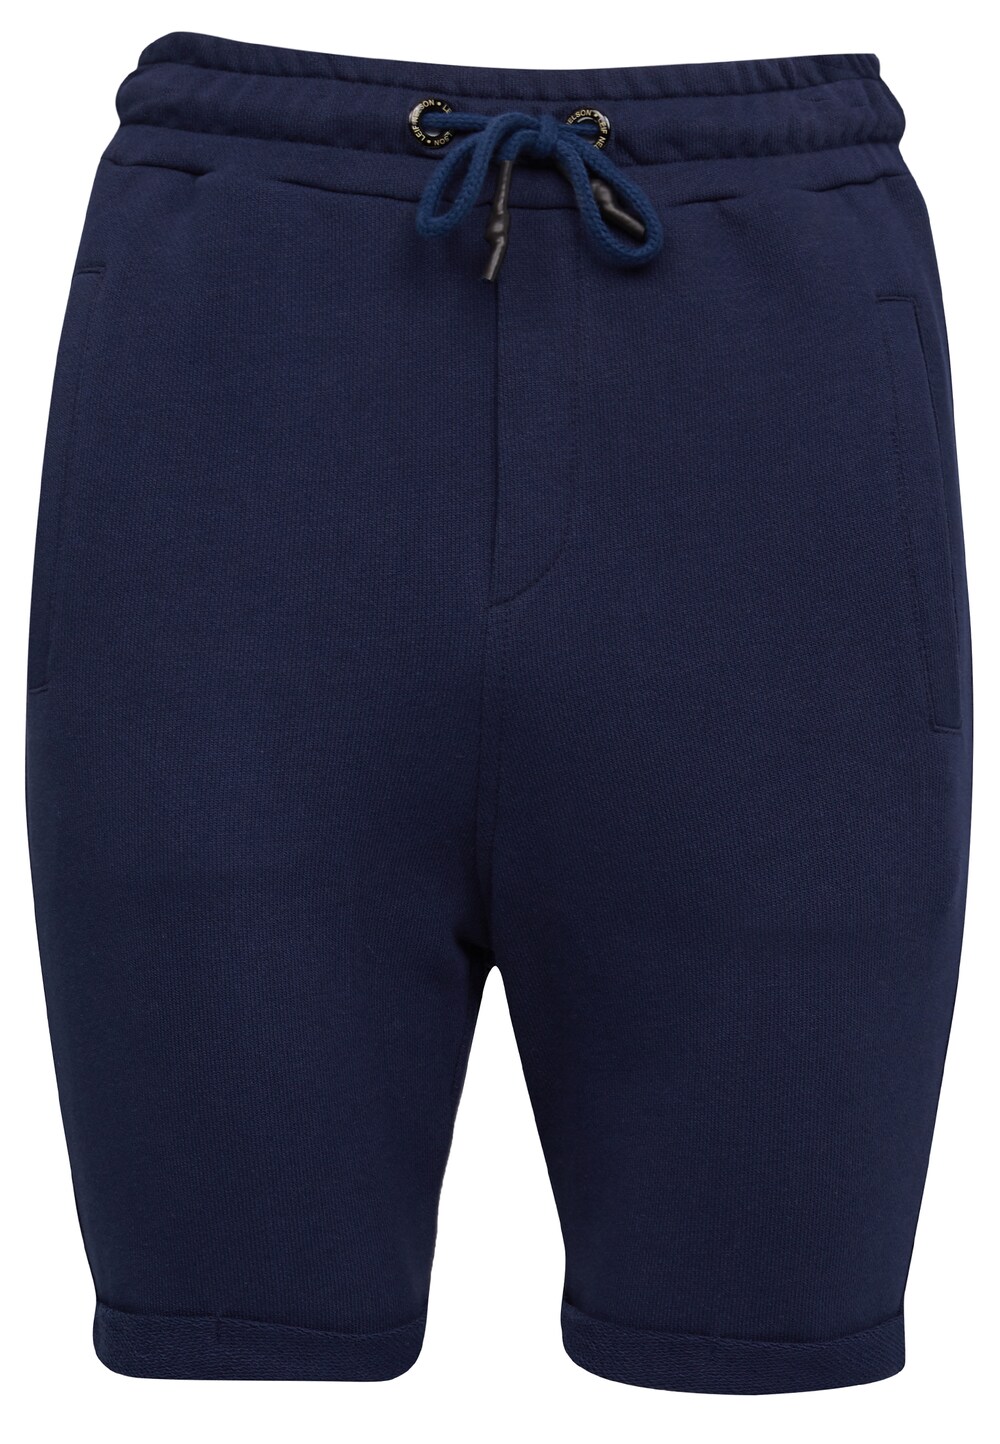 Узкие брюки Leif Nelson LN-8316, темно-синий